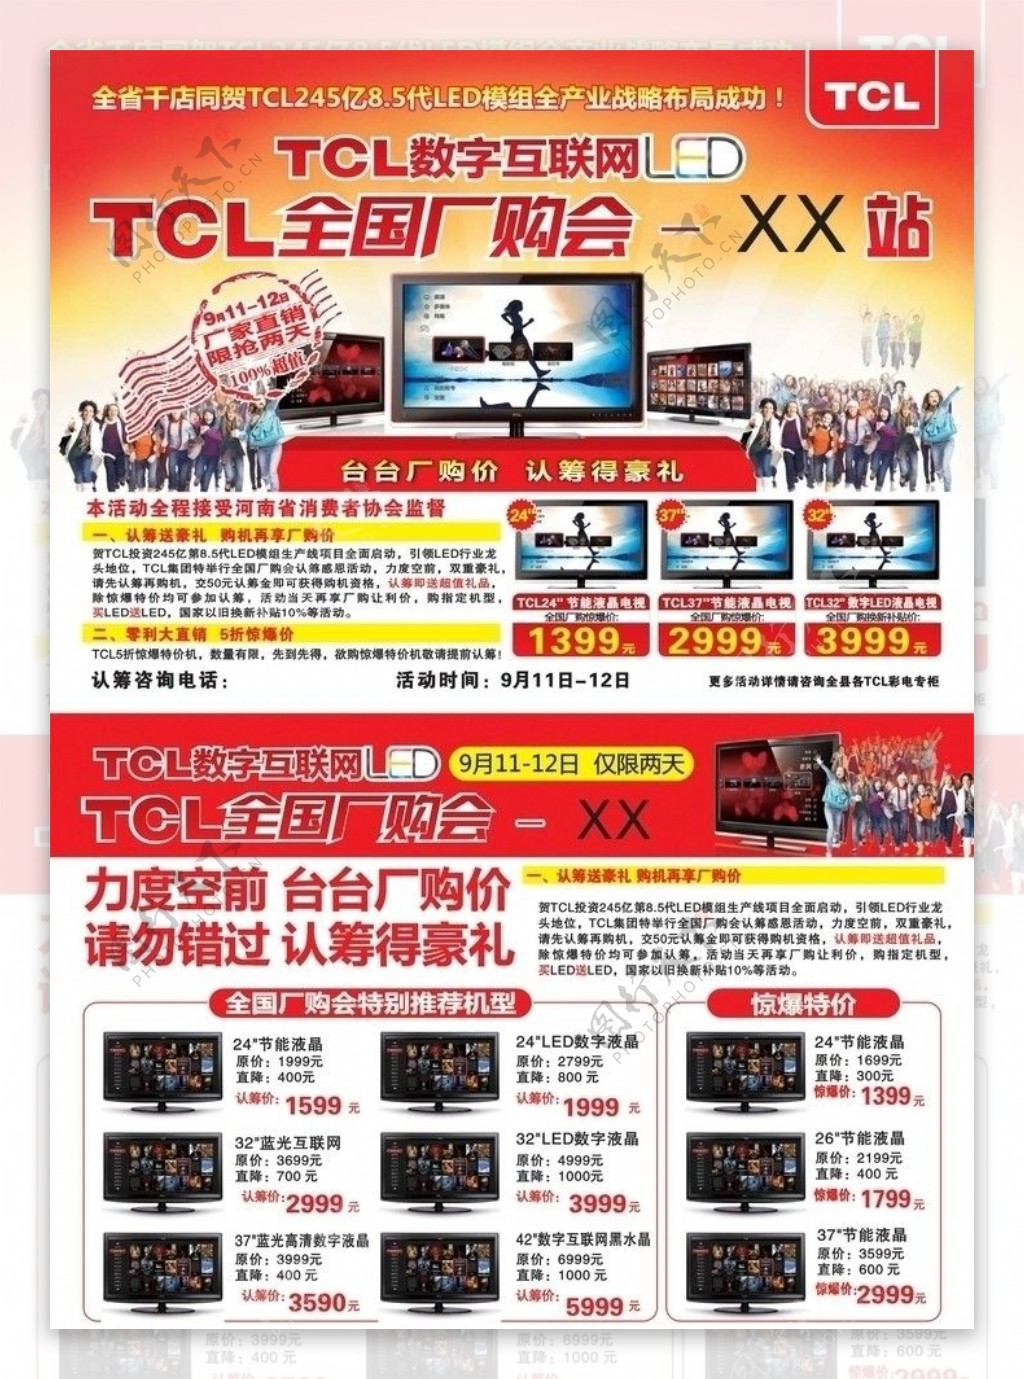 TCL最新的模版图片